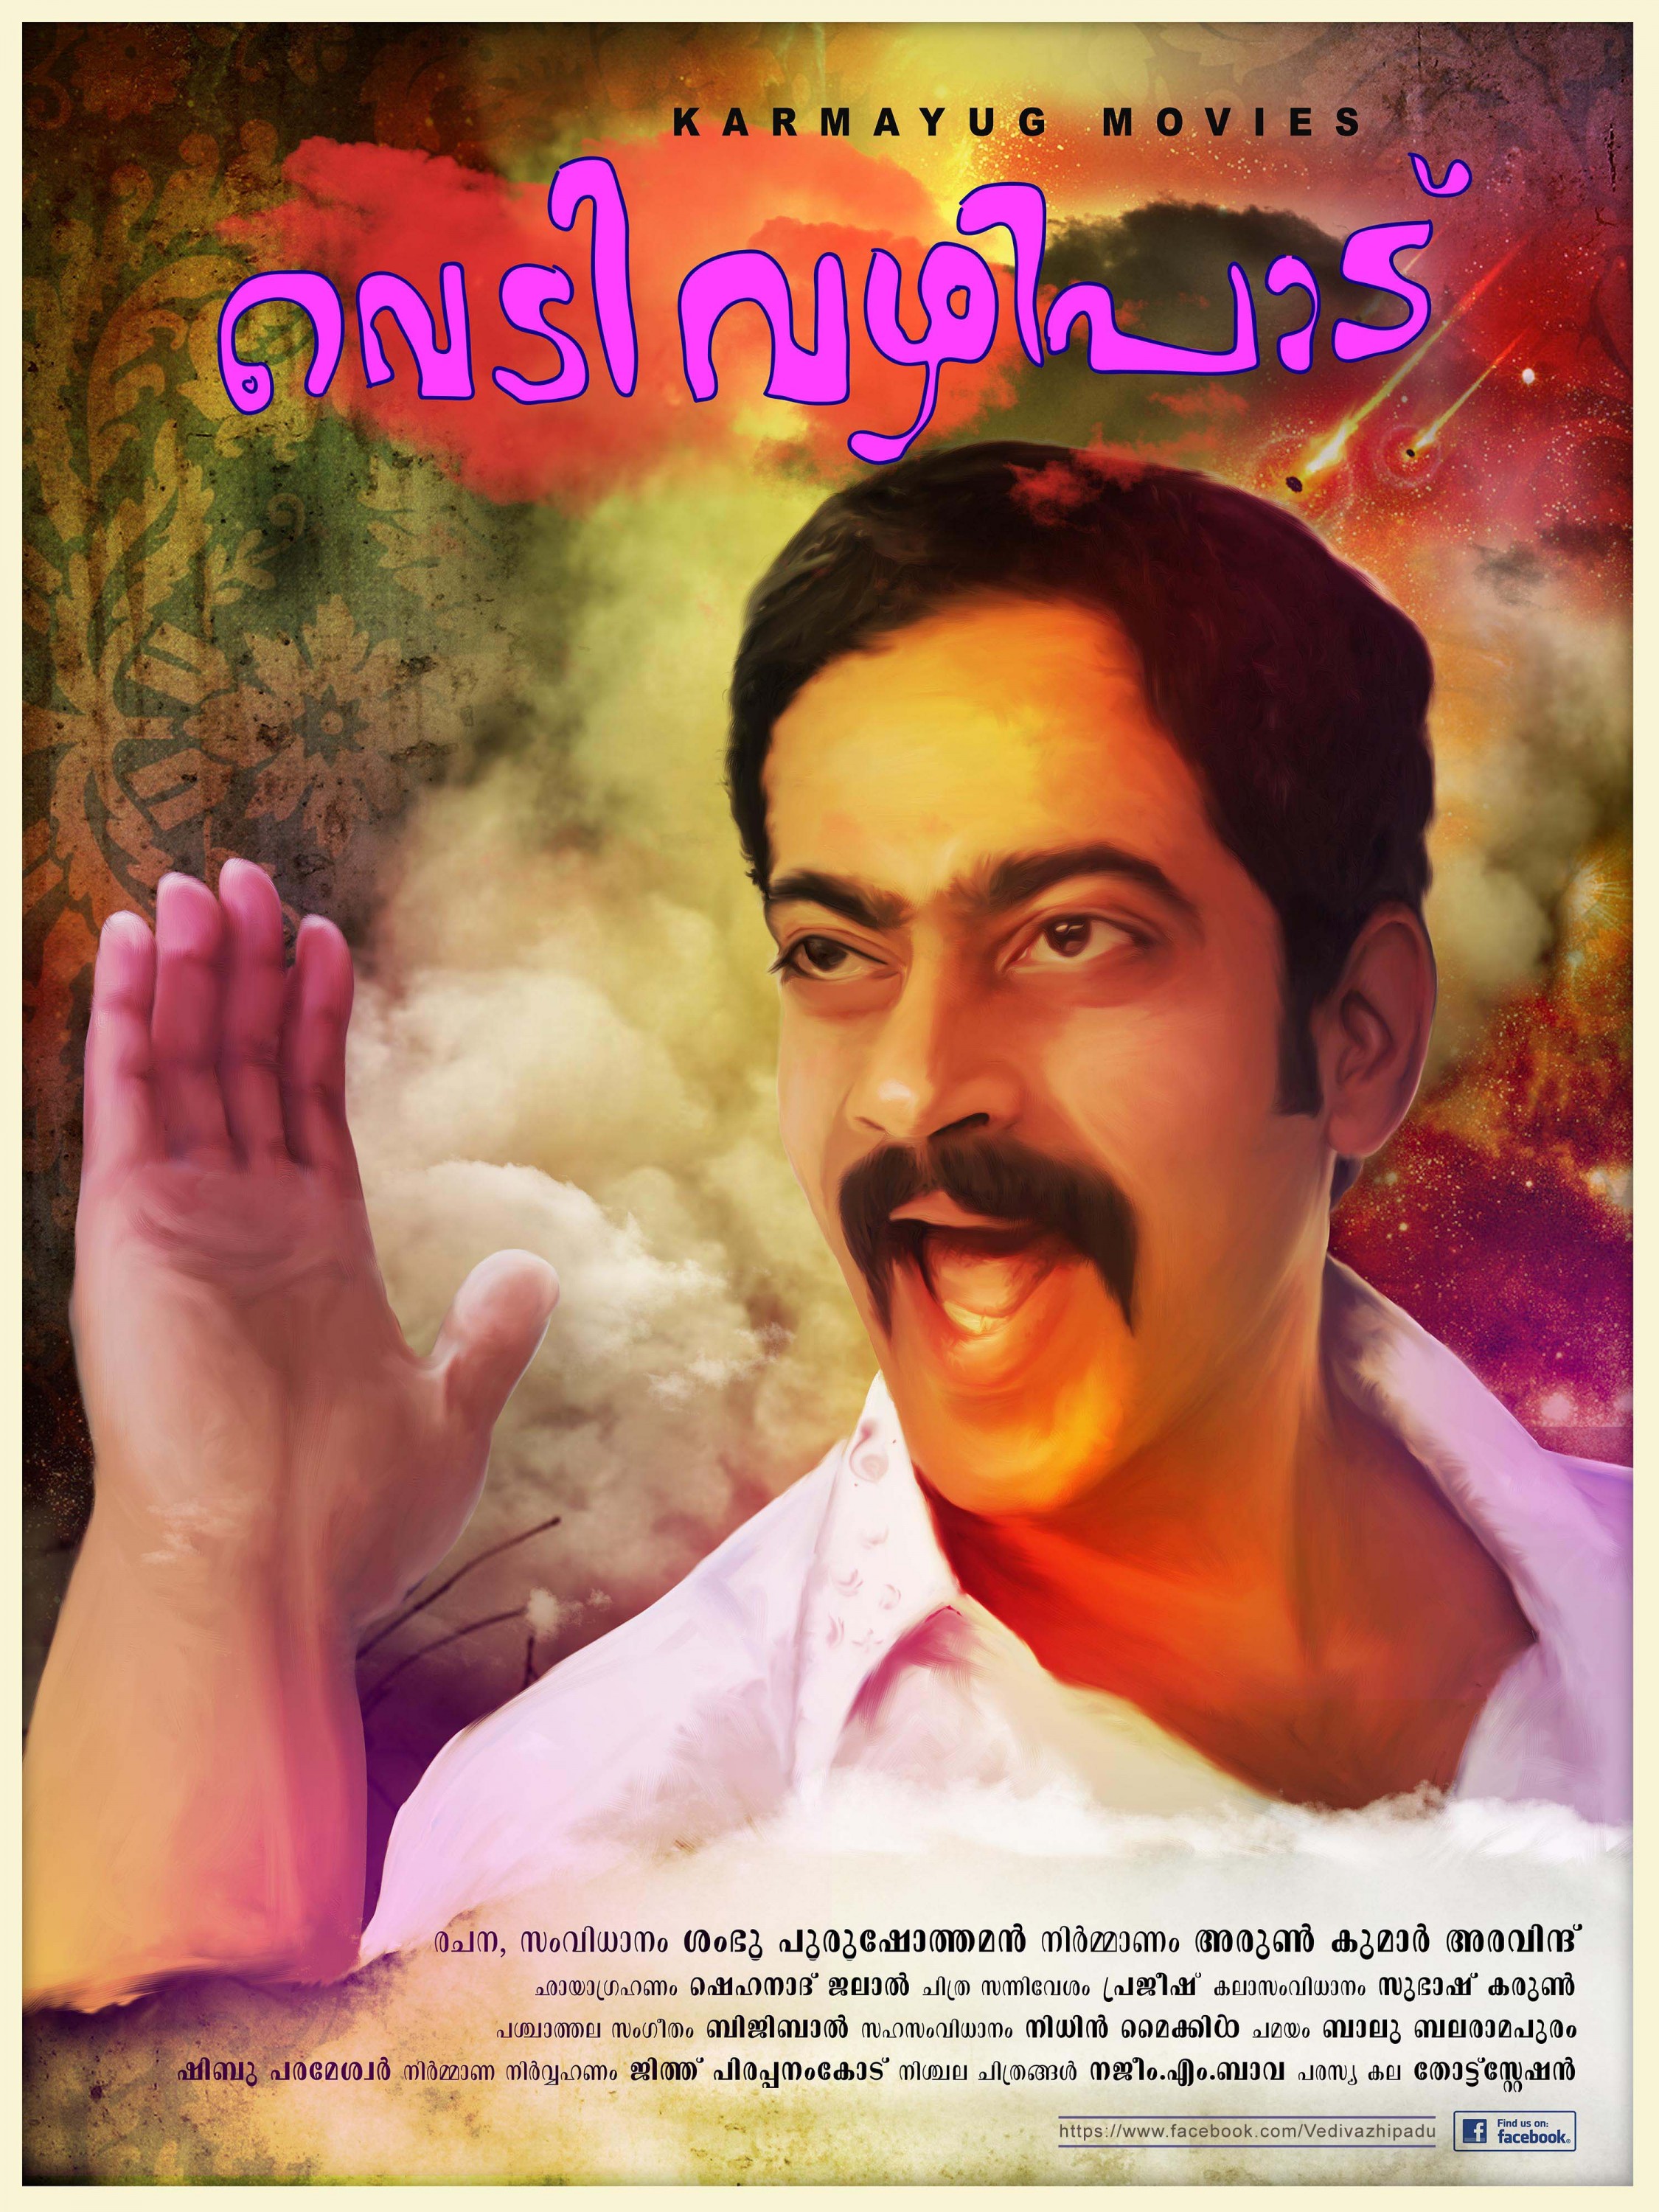 Mega Sized Movie Poster Image for Vedivazhipadu (#10 of 13)